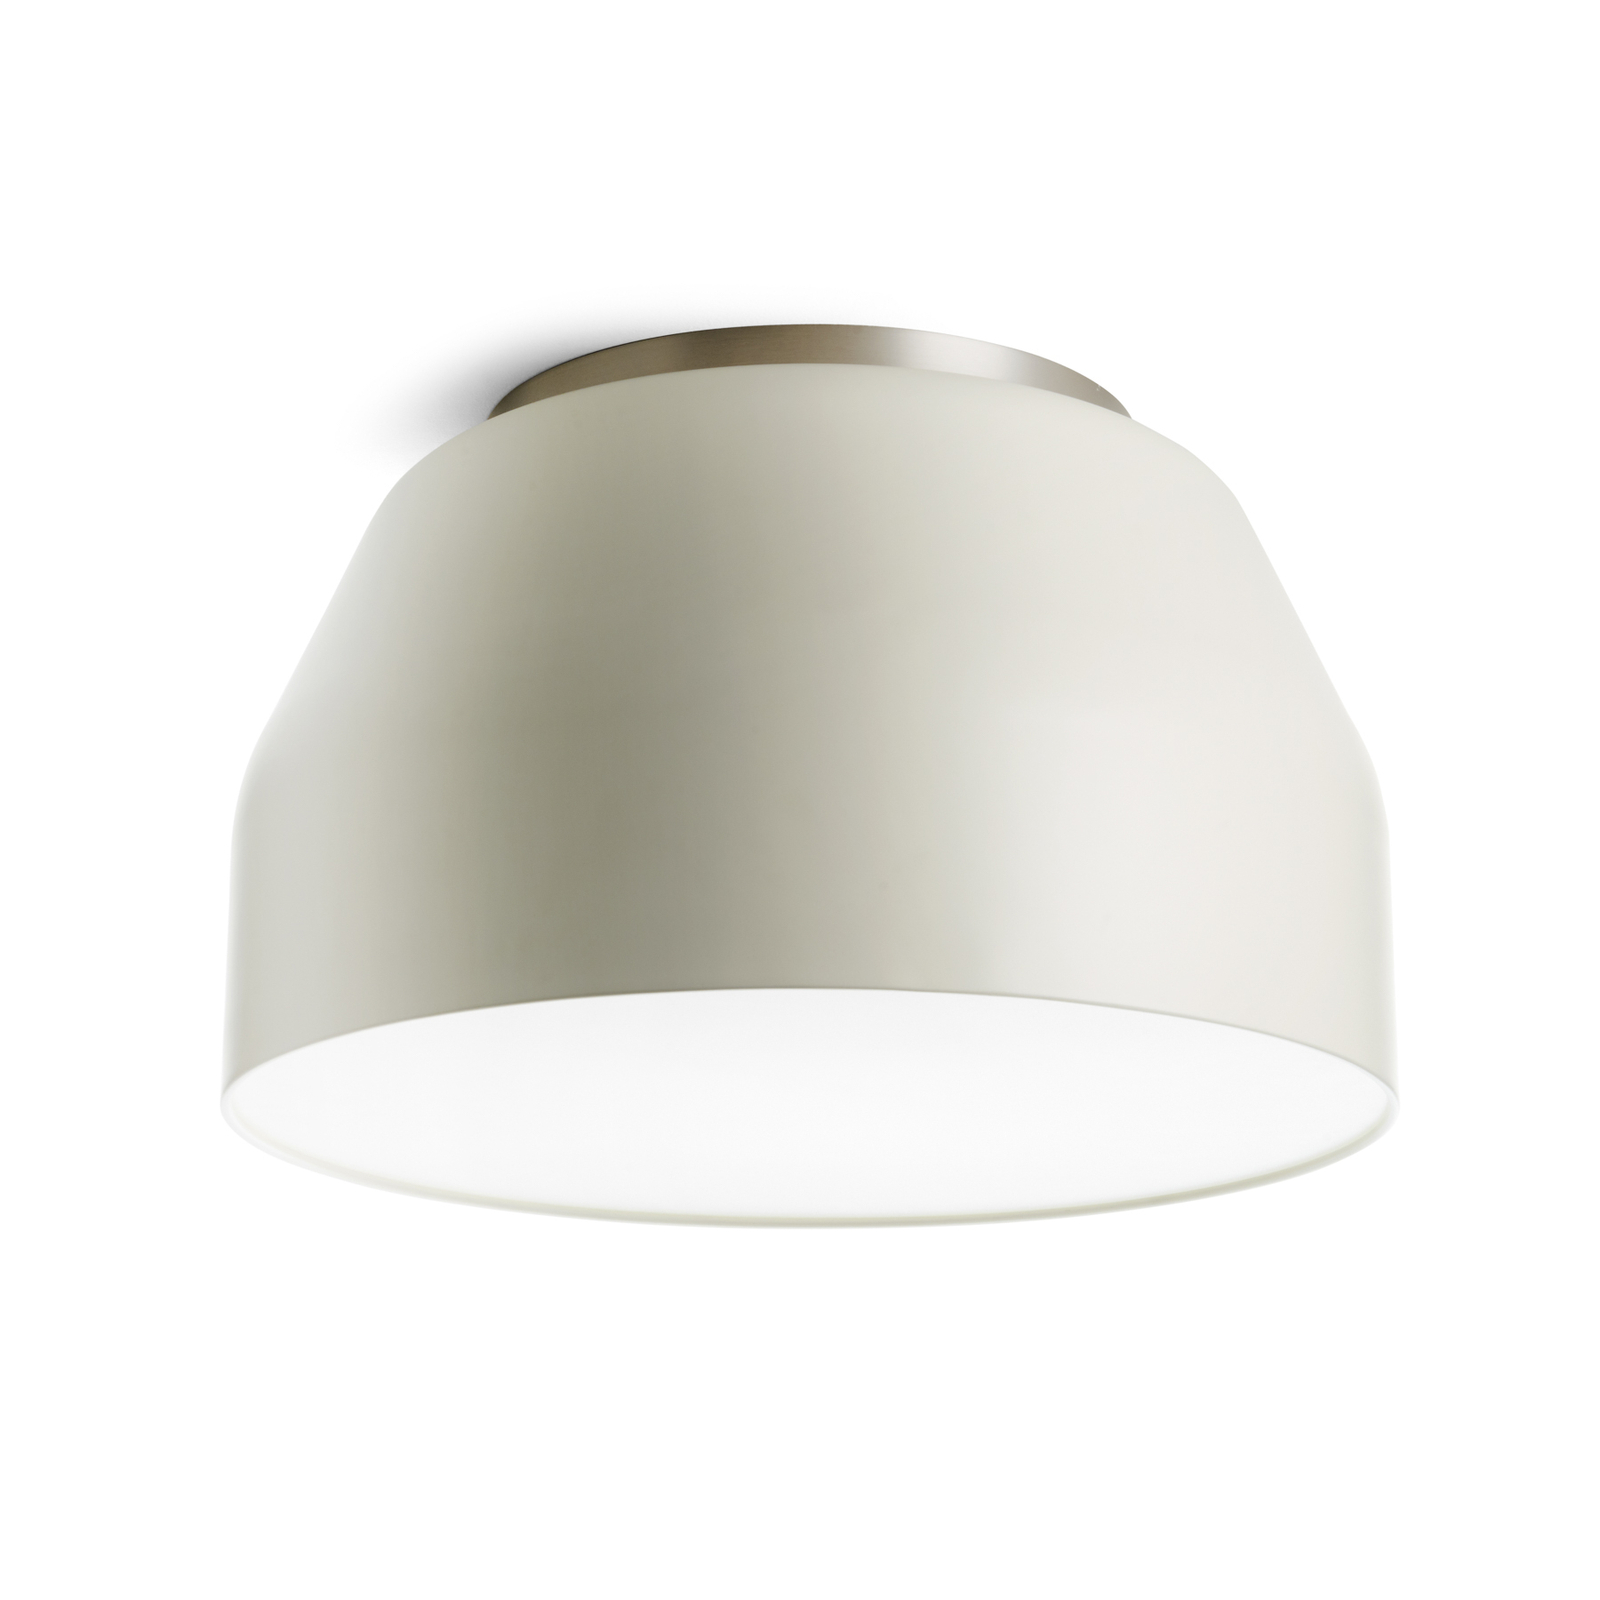 Mug ceiling light, cream white with chrome detail Ø55cm